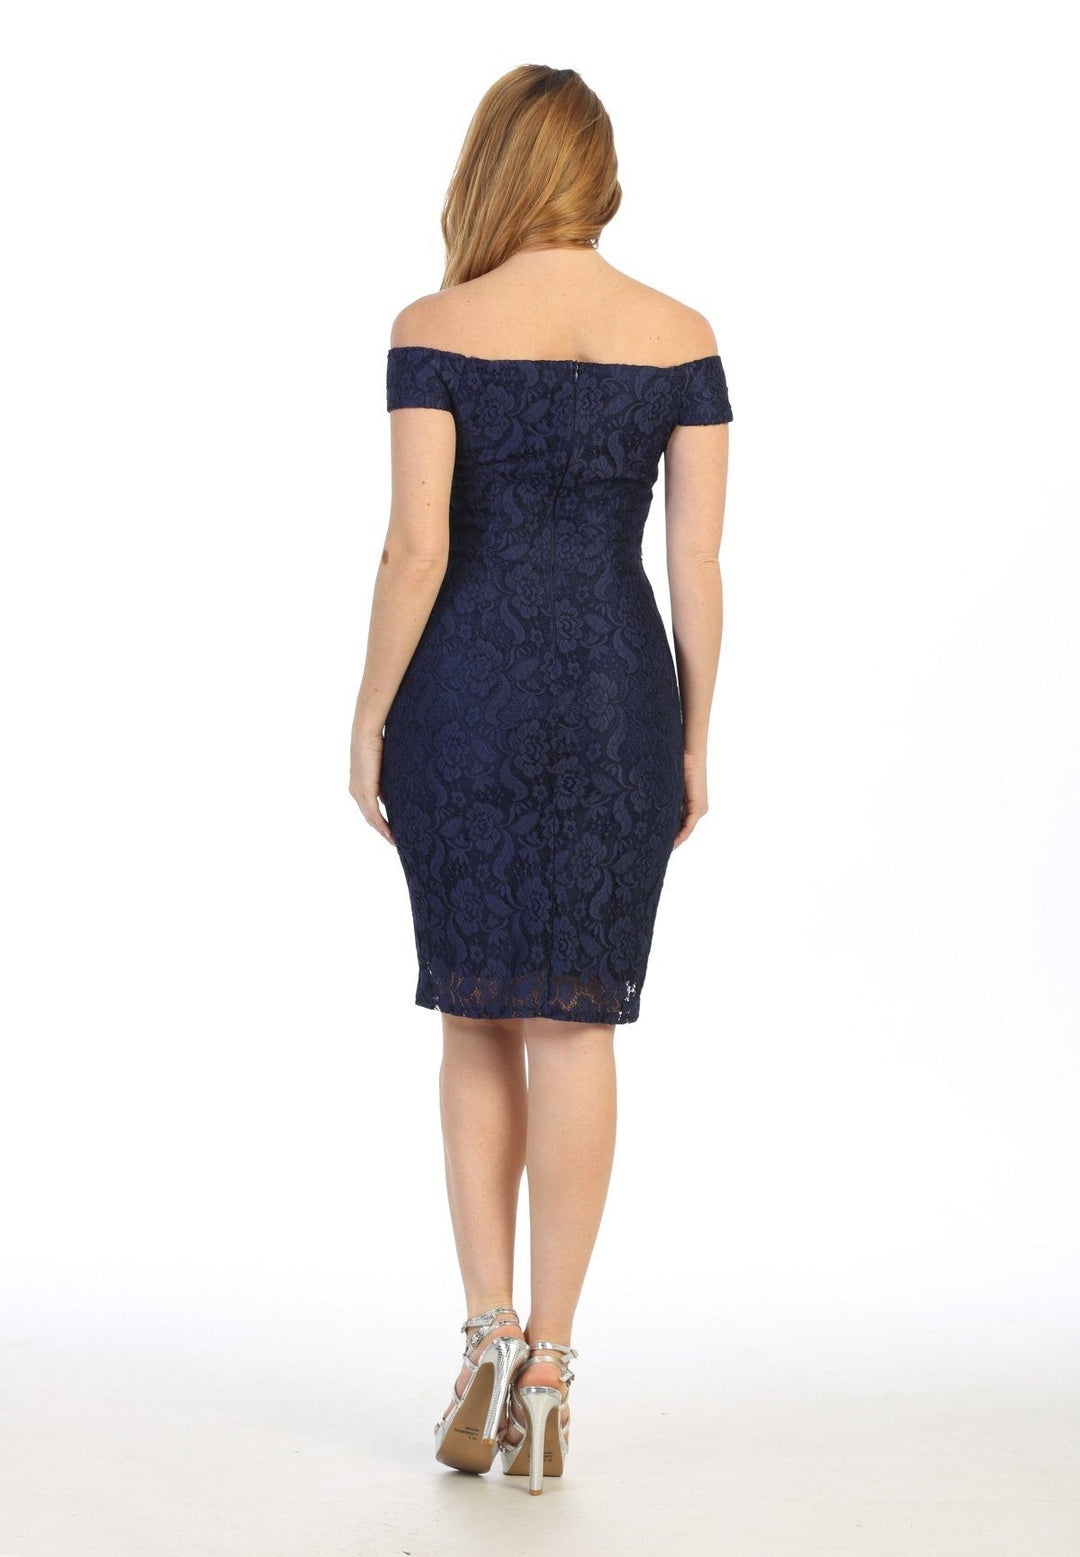 Floral Lace Short Off Shoulder Dress by Celavie 6333